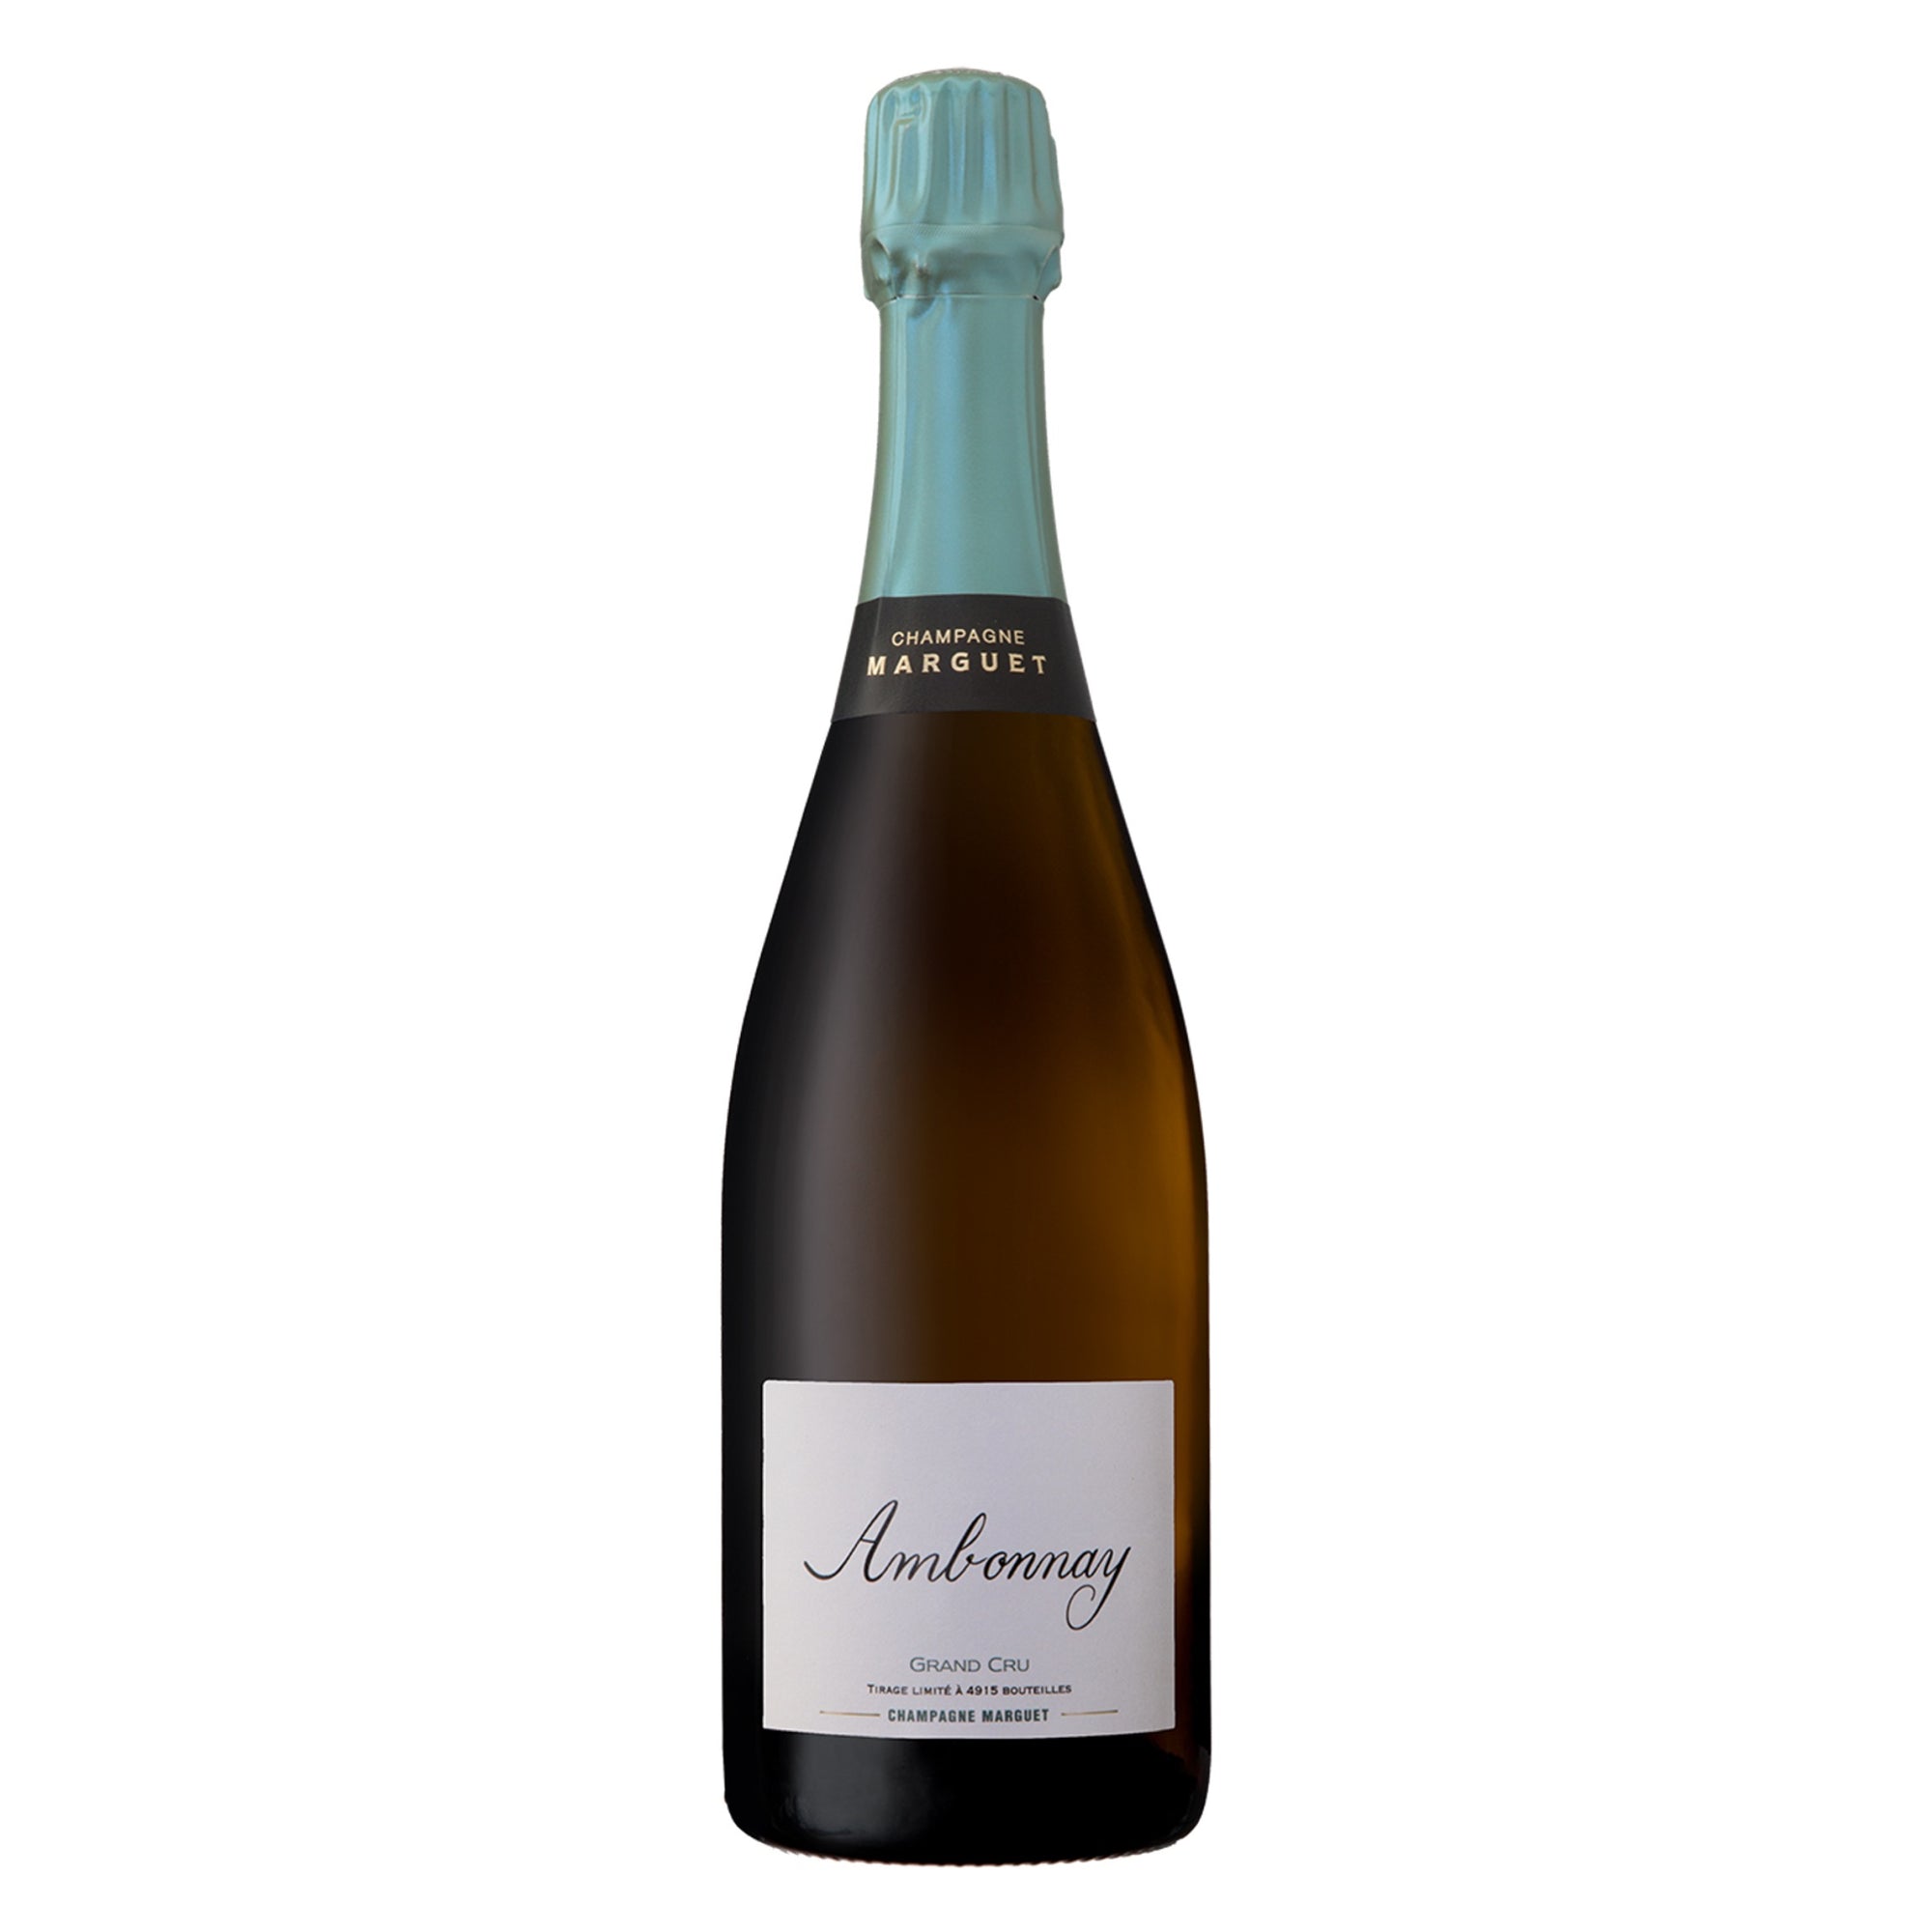 MARGUET Champagne Grand Cru Brut Nature "Ambonnay" 2018